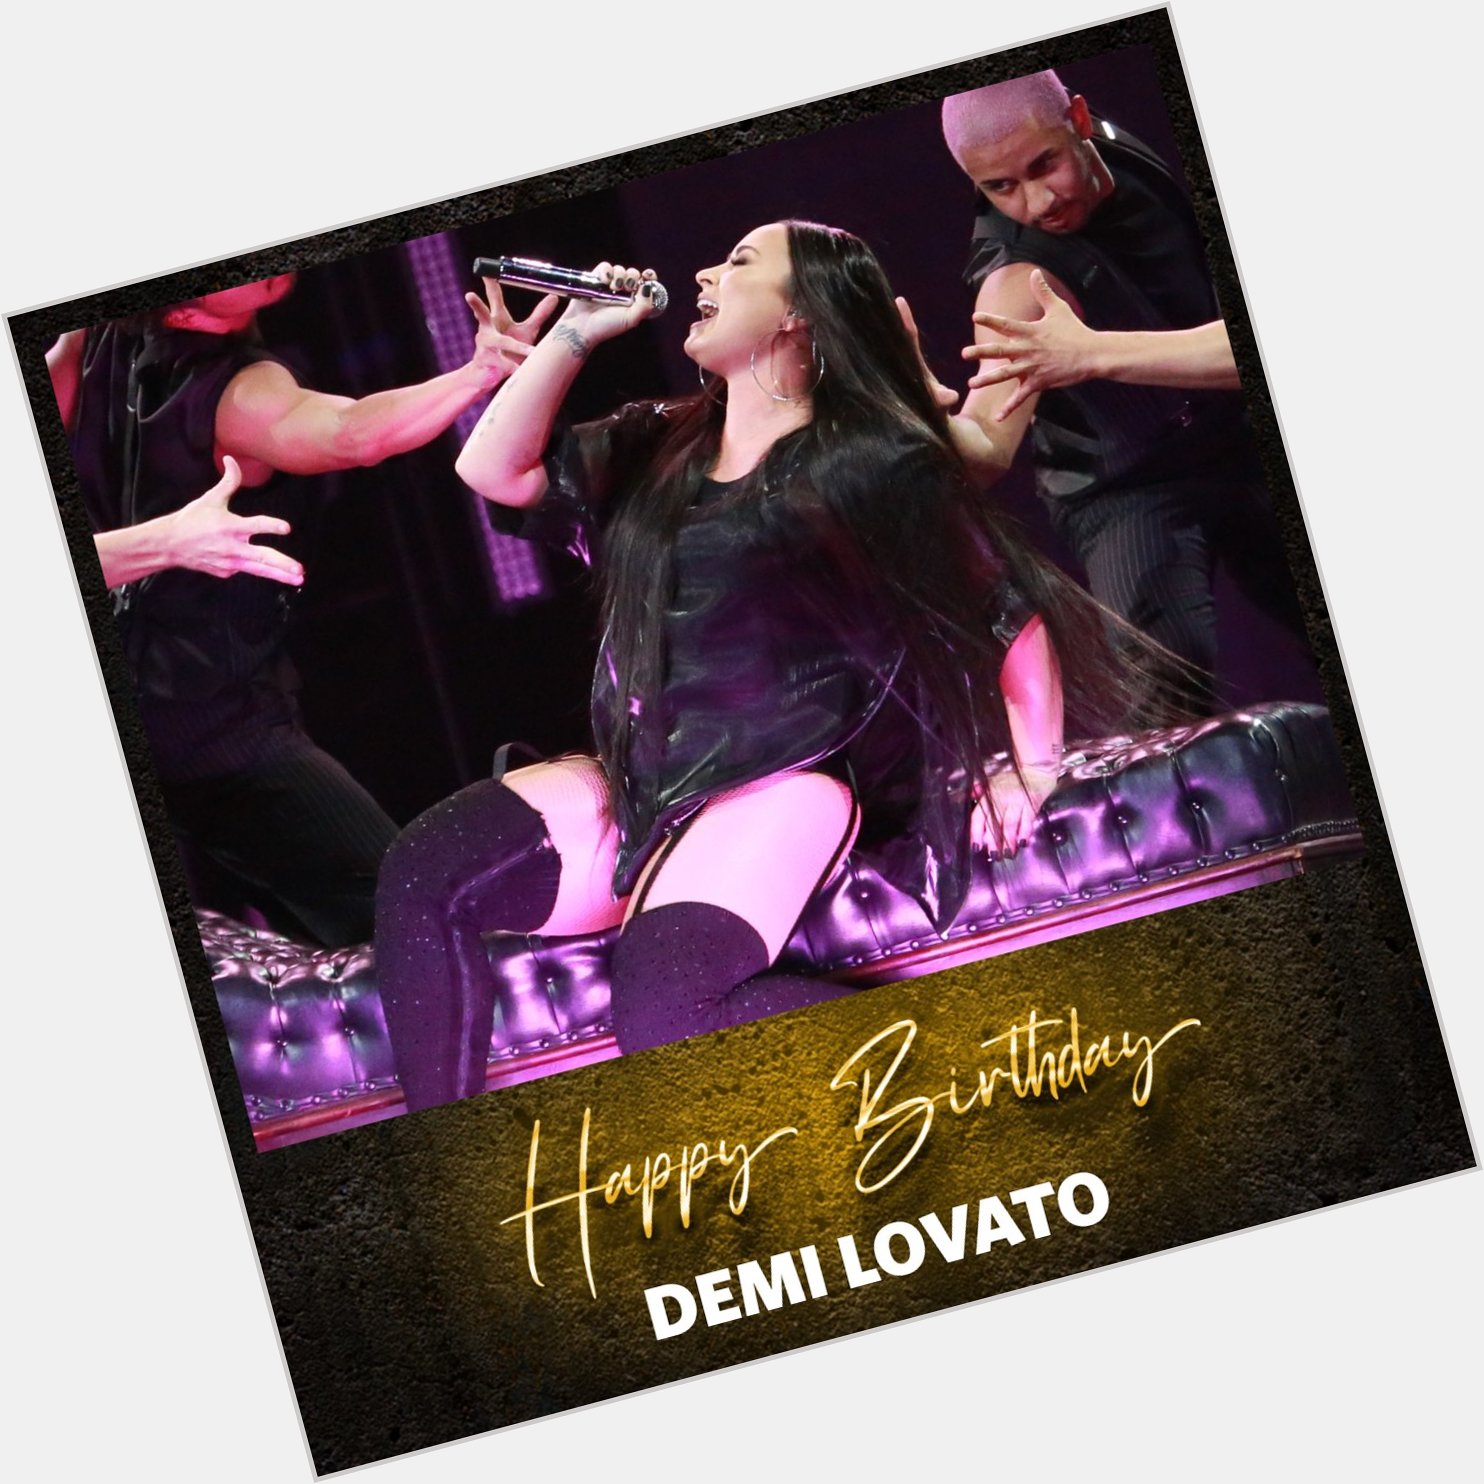 Happy Birthday Demi Lovato ( and congrats on the killer new album!!! 